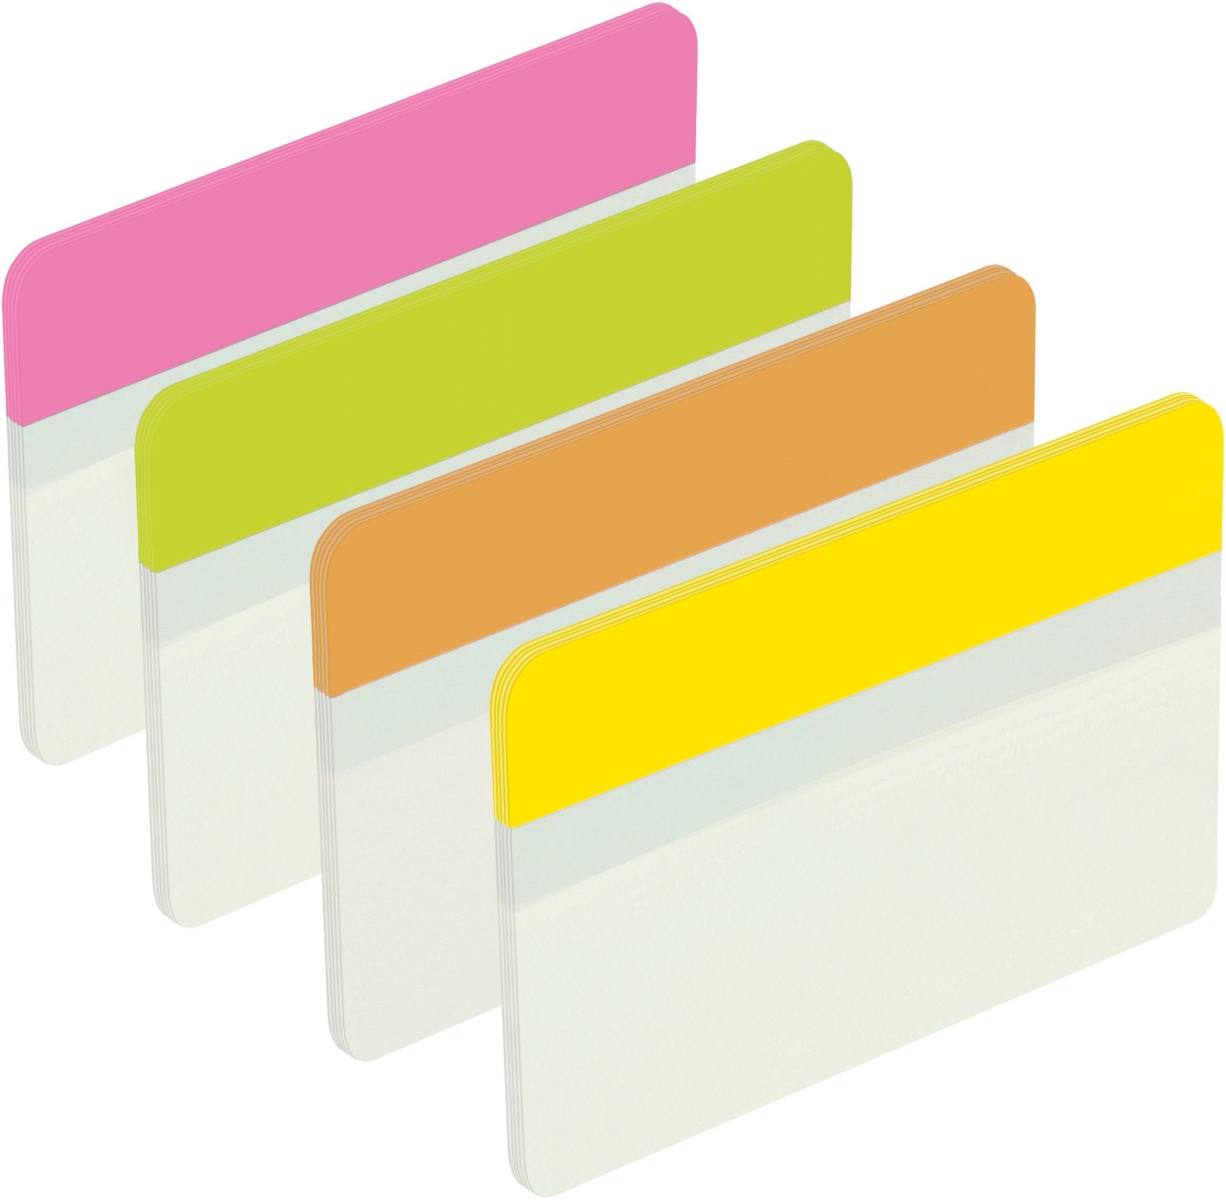 3M Post-it Index Strong 686-PLOY, 50,8 mm x 38 mm, keltainen, vihreä, oranssi, vaaleanpunainen, 4 x 6 liimanauhaa